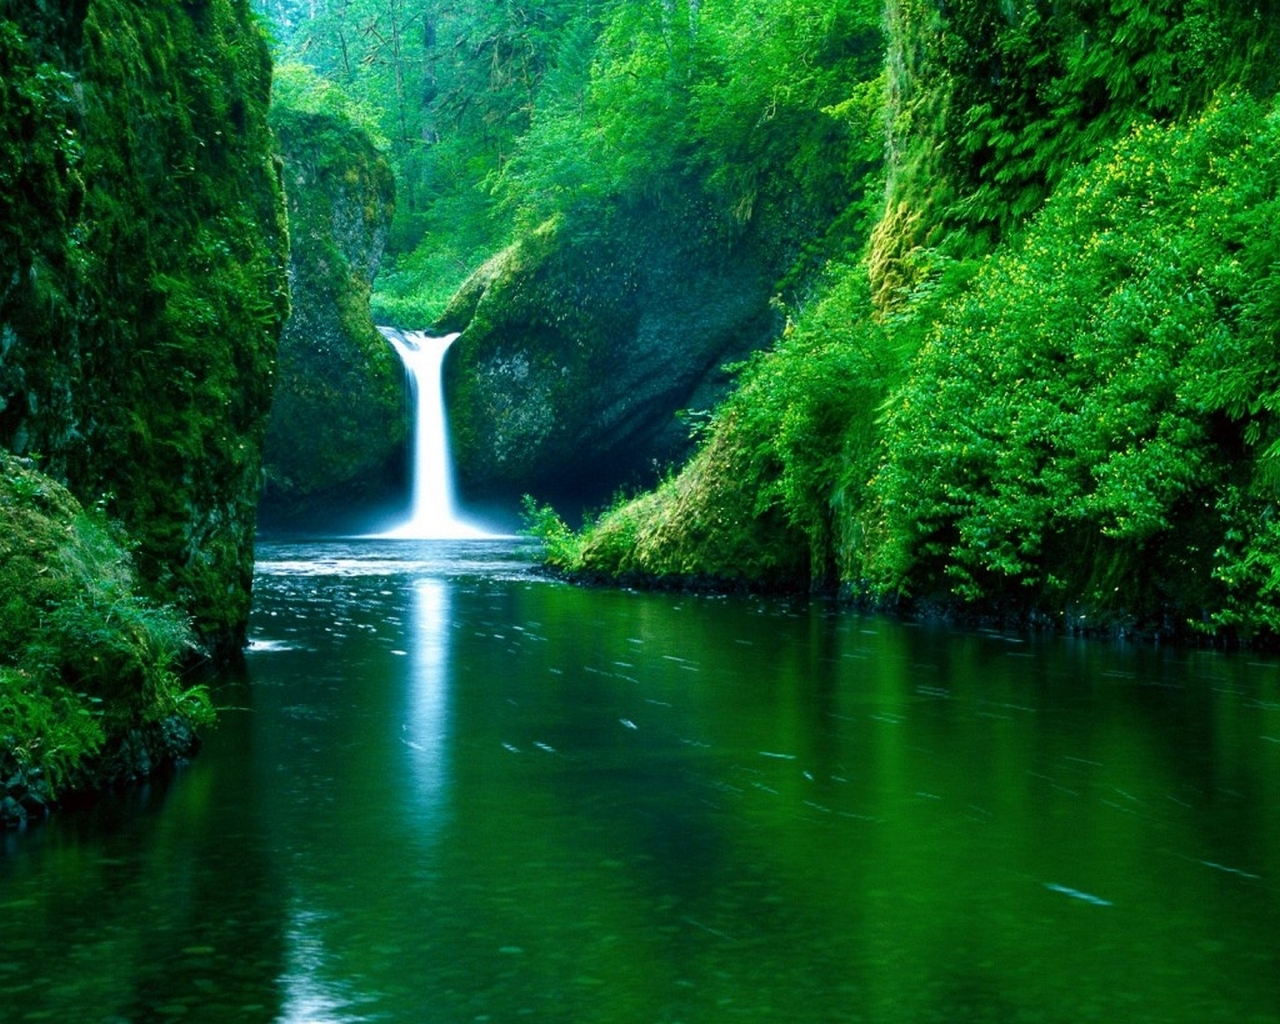 Fond d'ecran Petite cascade nature luxuriante